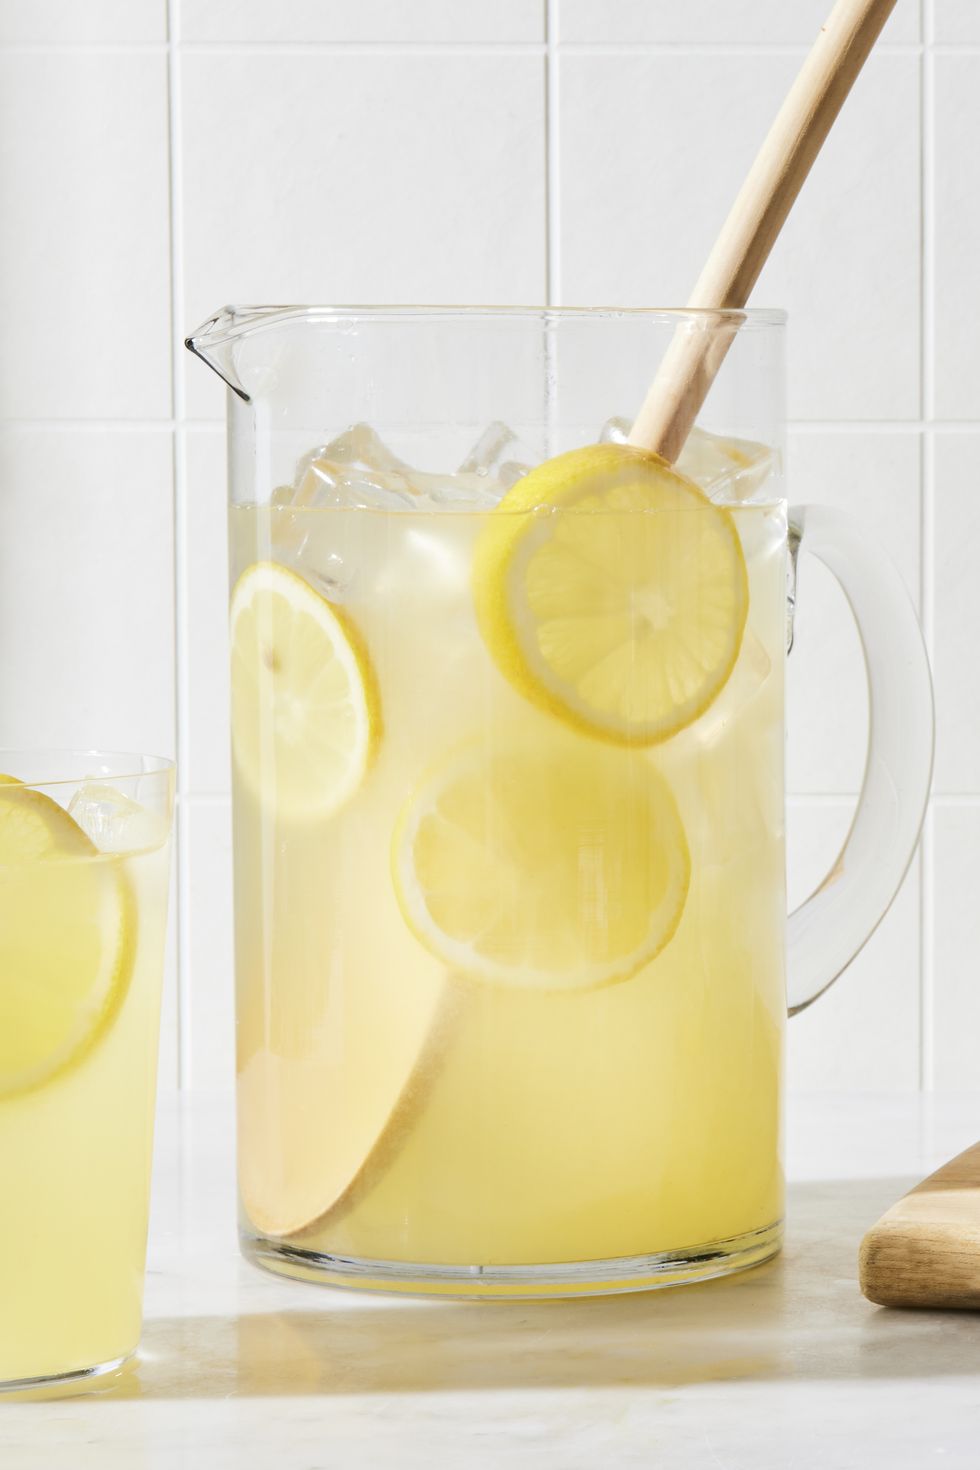 homemade lemonade with lemon slices